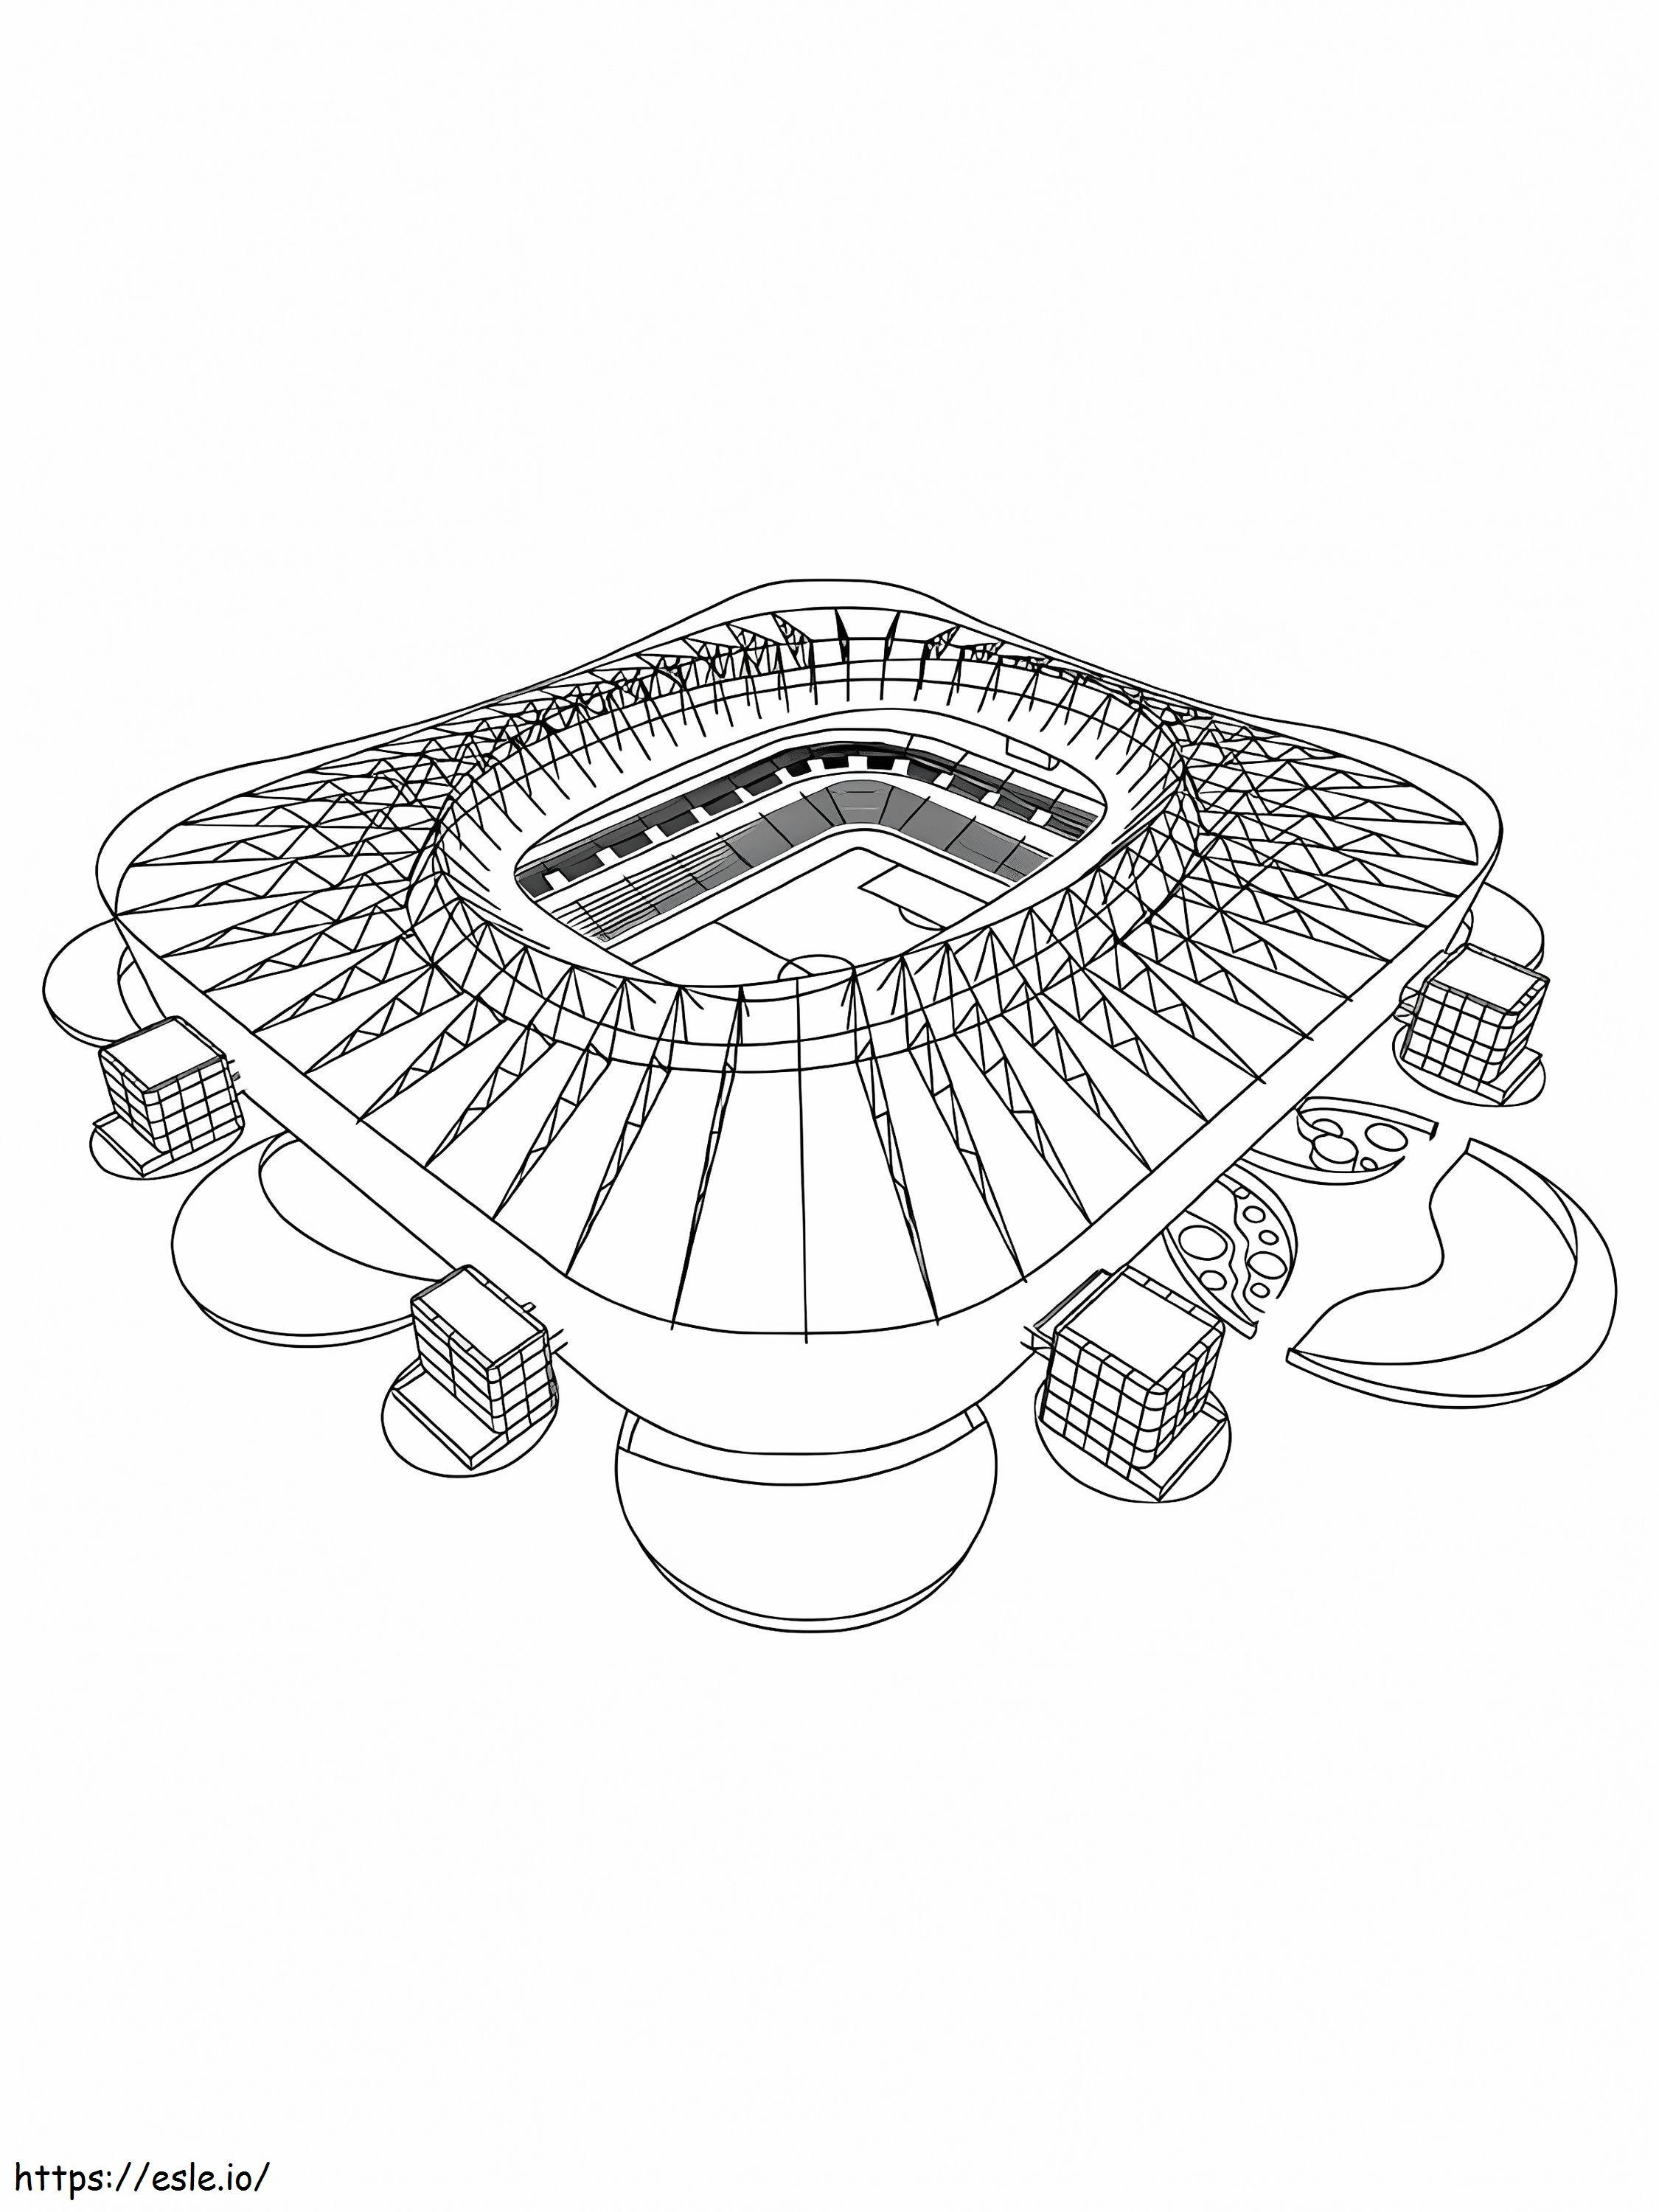 Coloriage Grand stade de football à imprimer dessin